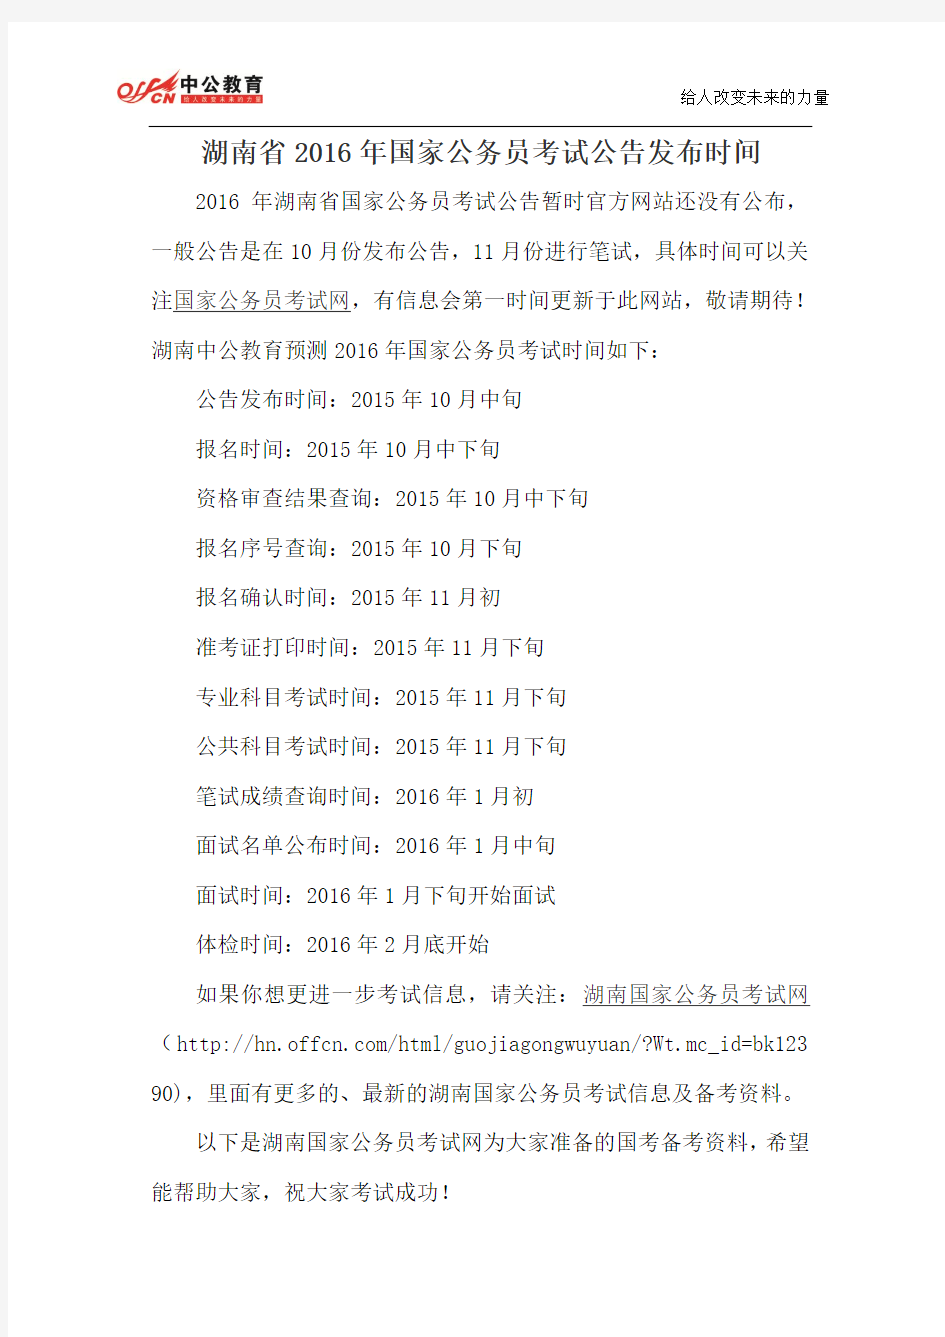 湖南省2016年国家公务员考试公告发布时间